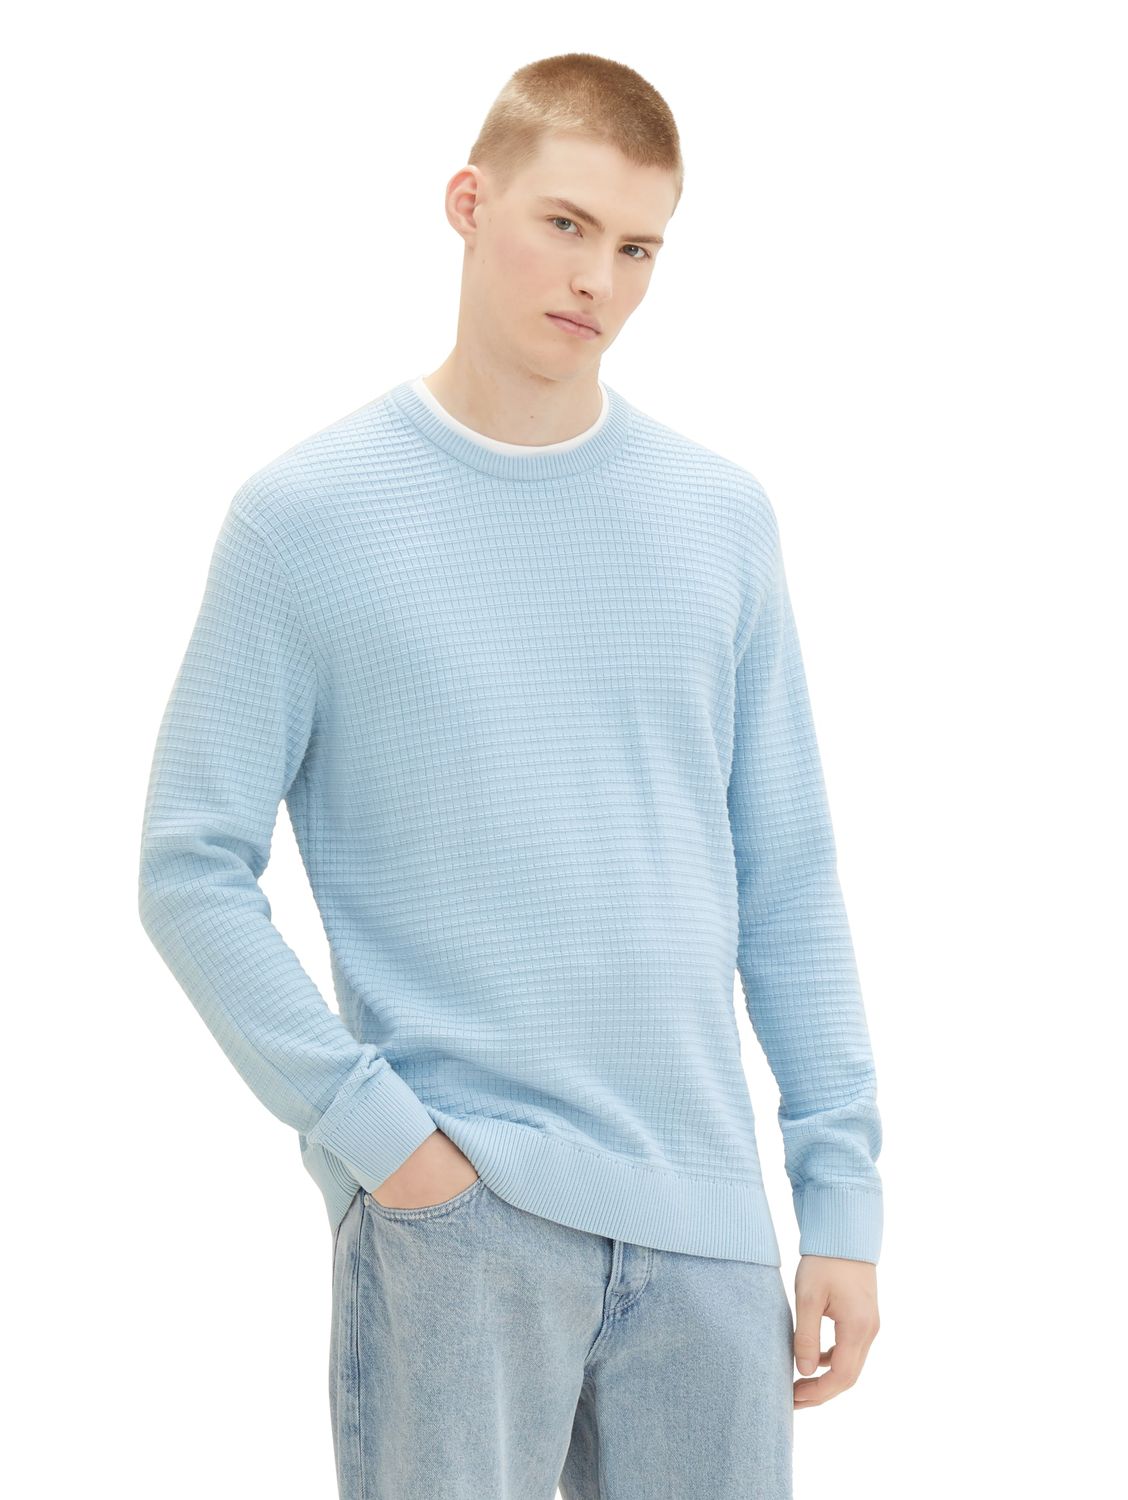 Пуловер TOM TAILOR Denim STRUCTURED DOUBLELAYER, синий пуловер tom tailor denim structured doublelayer синий